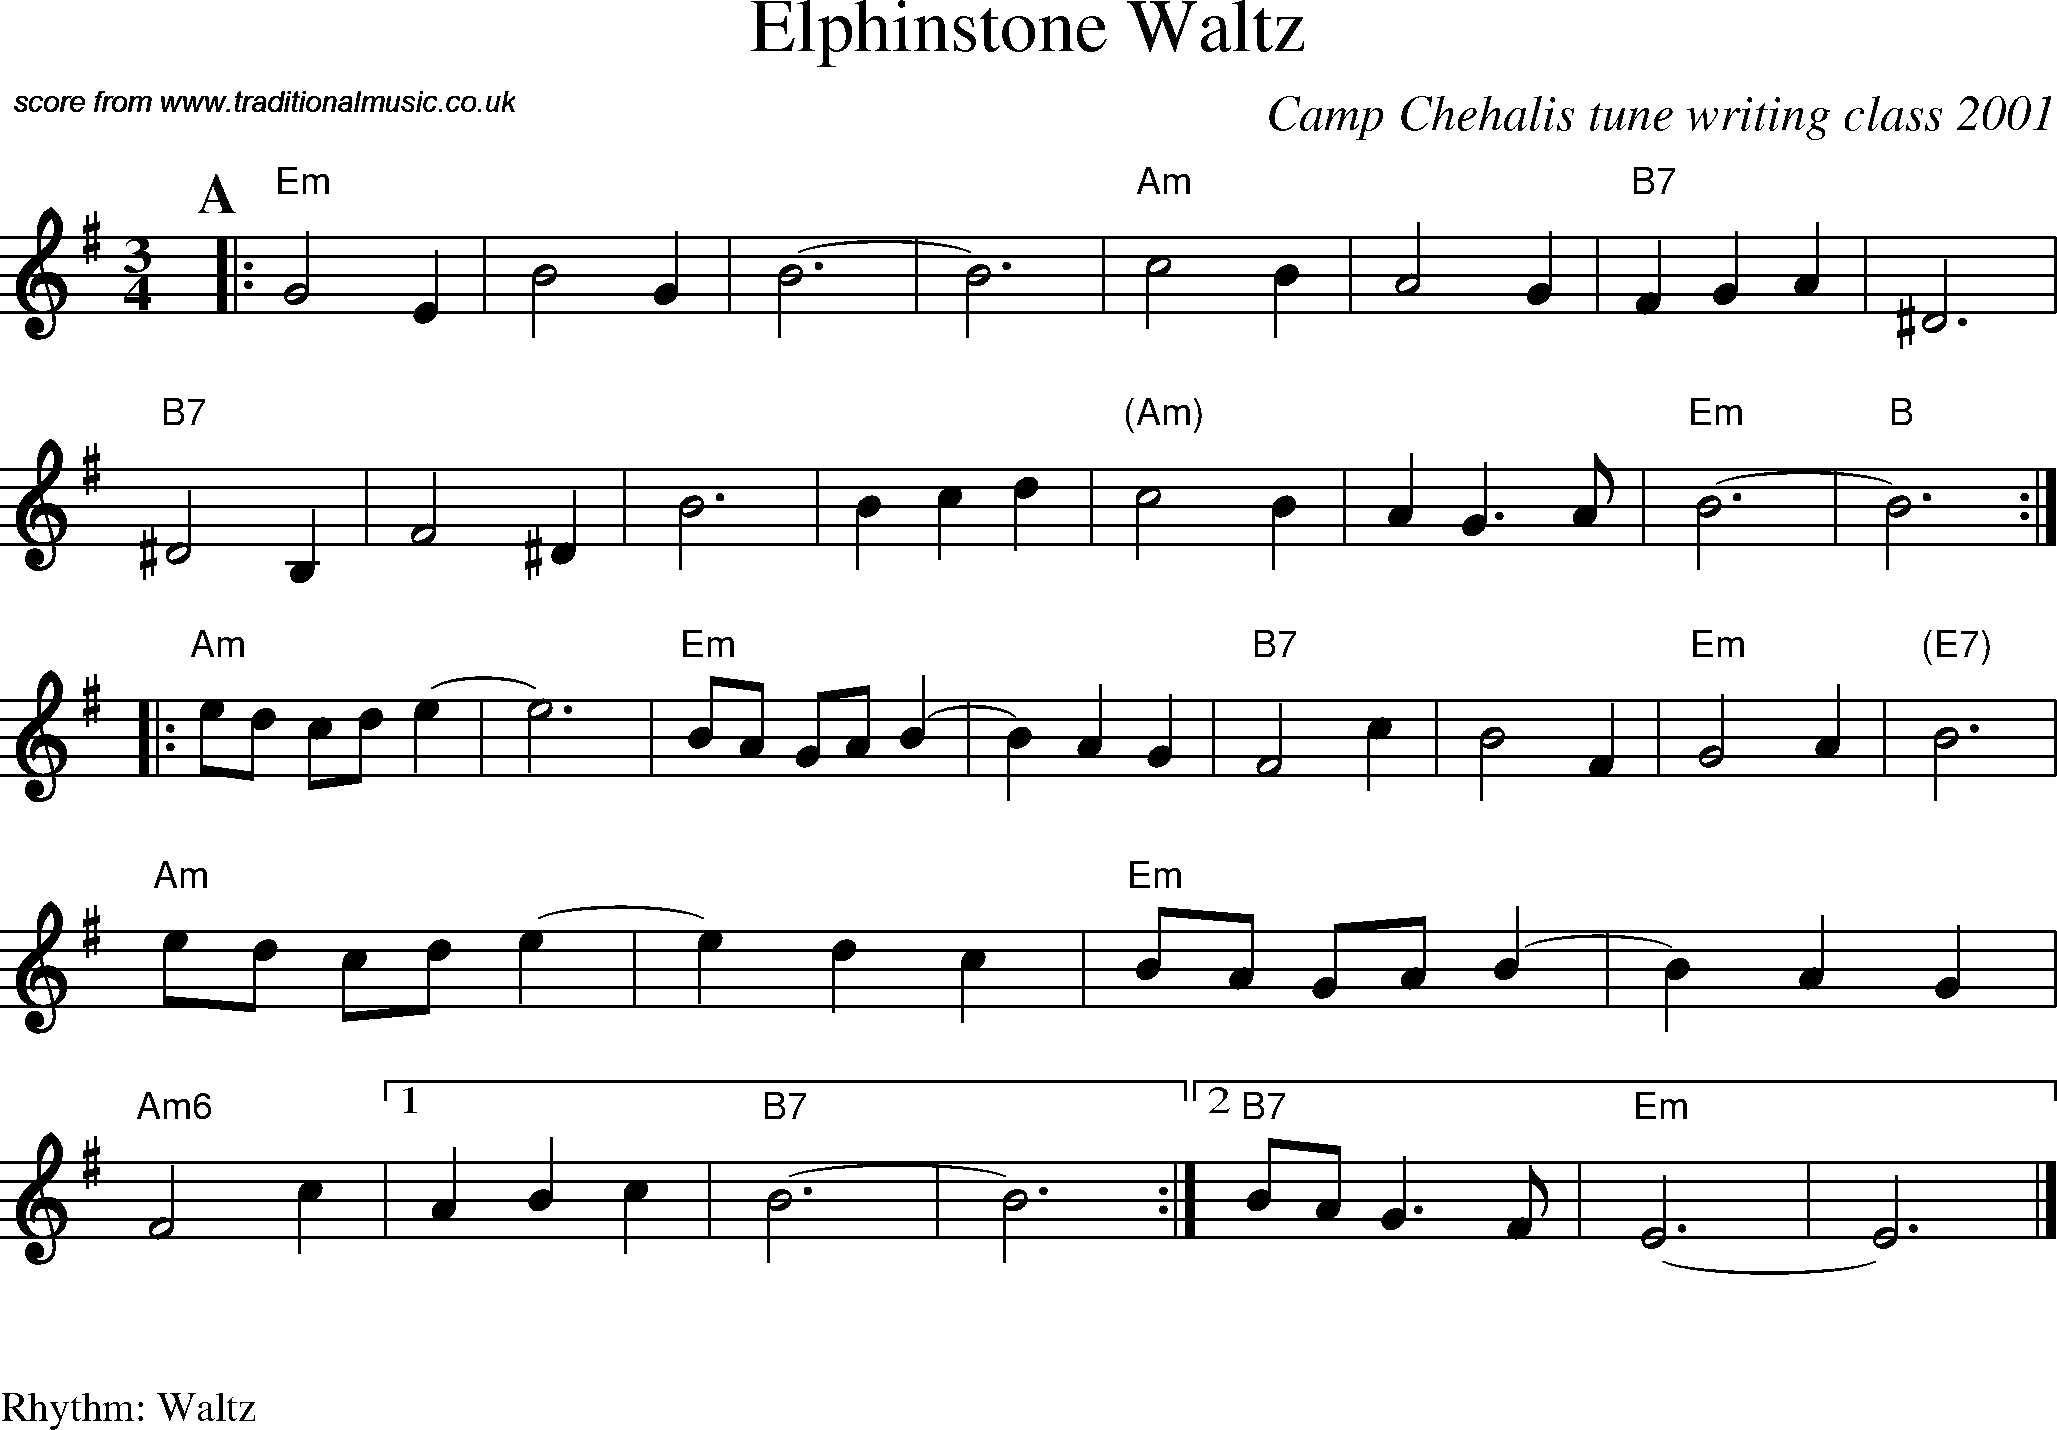 Sheet Music Score for Waltz - Elphinstone Waltz